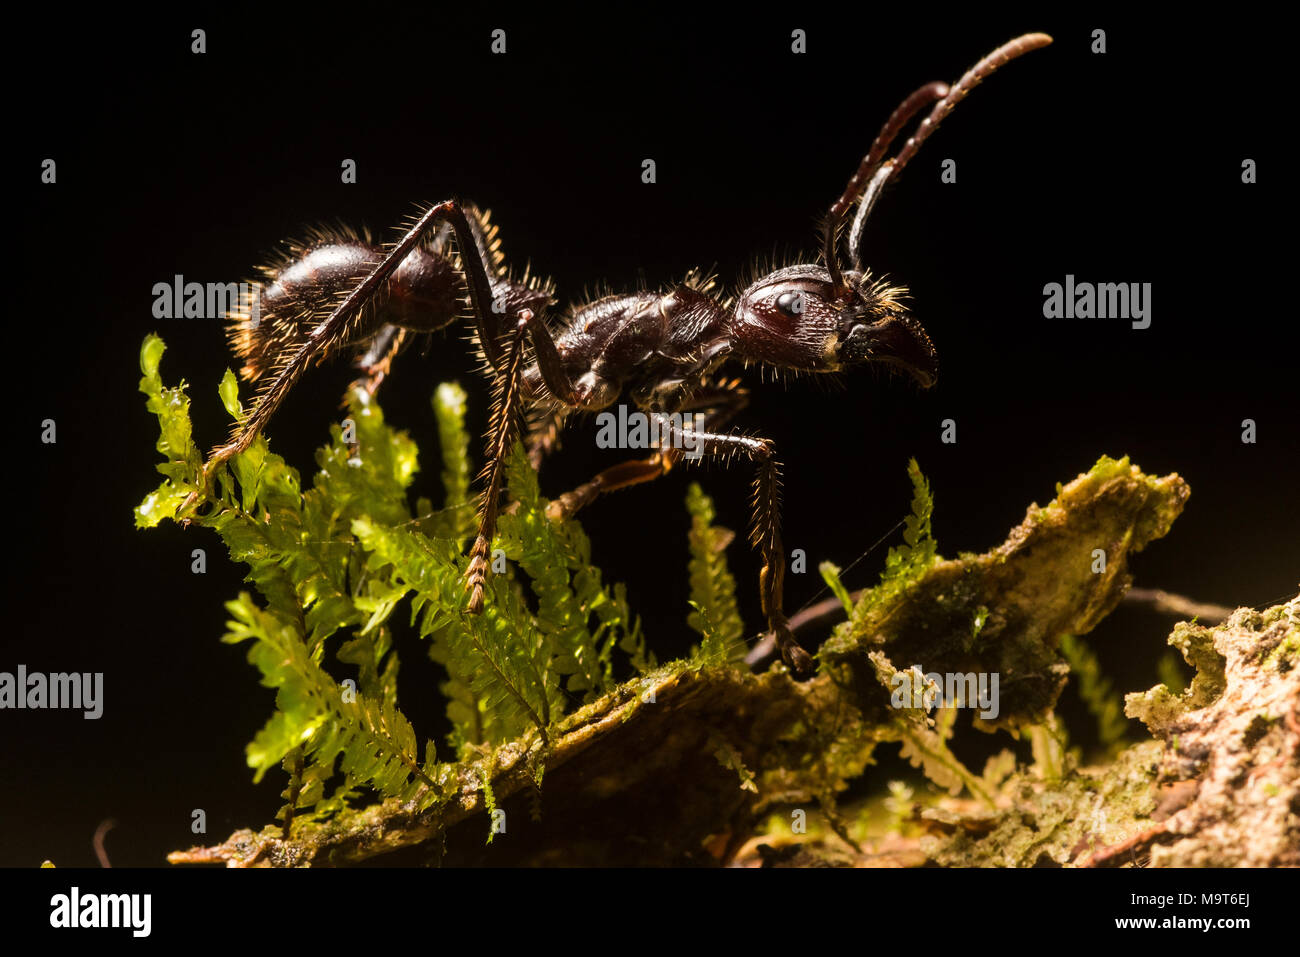 Die berüchtigten bullet Ant (Paraponera clavata), für die meisten schmerzhaft Stechen unter den Insekten bekannt. Gefunden in Zentral- und Südamerika. Stockfoto